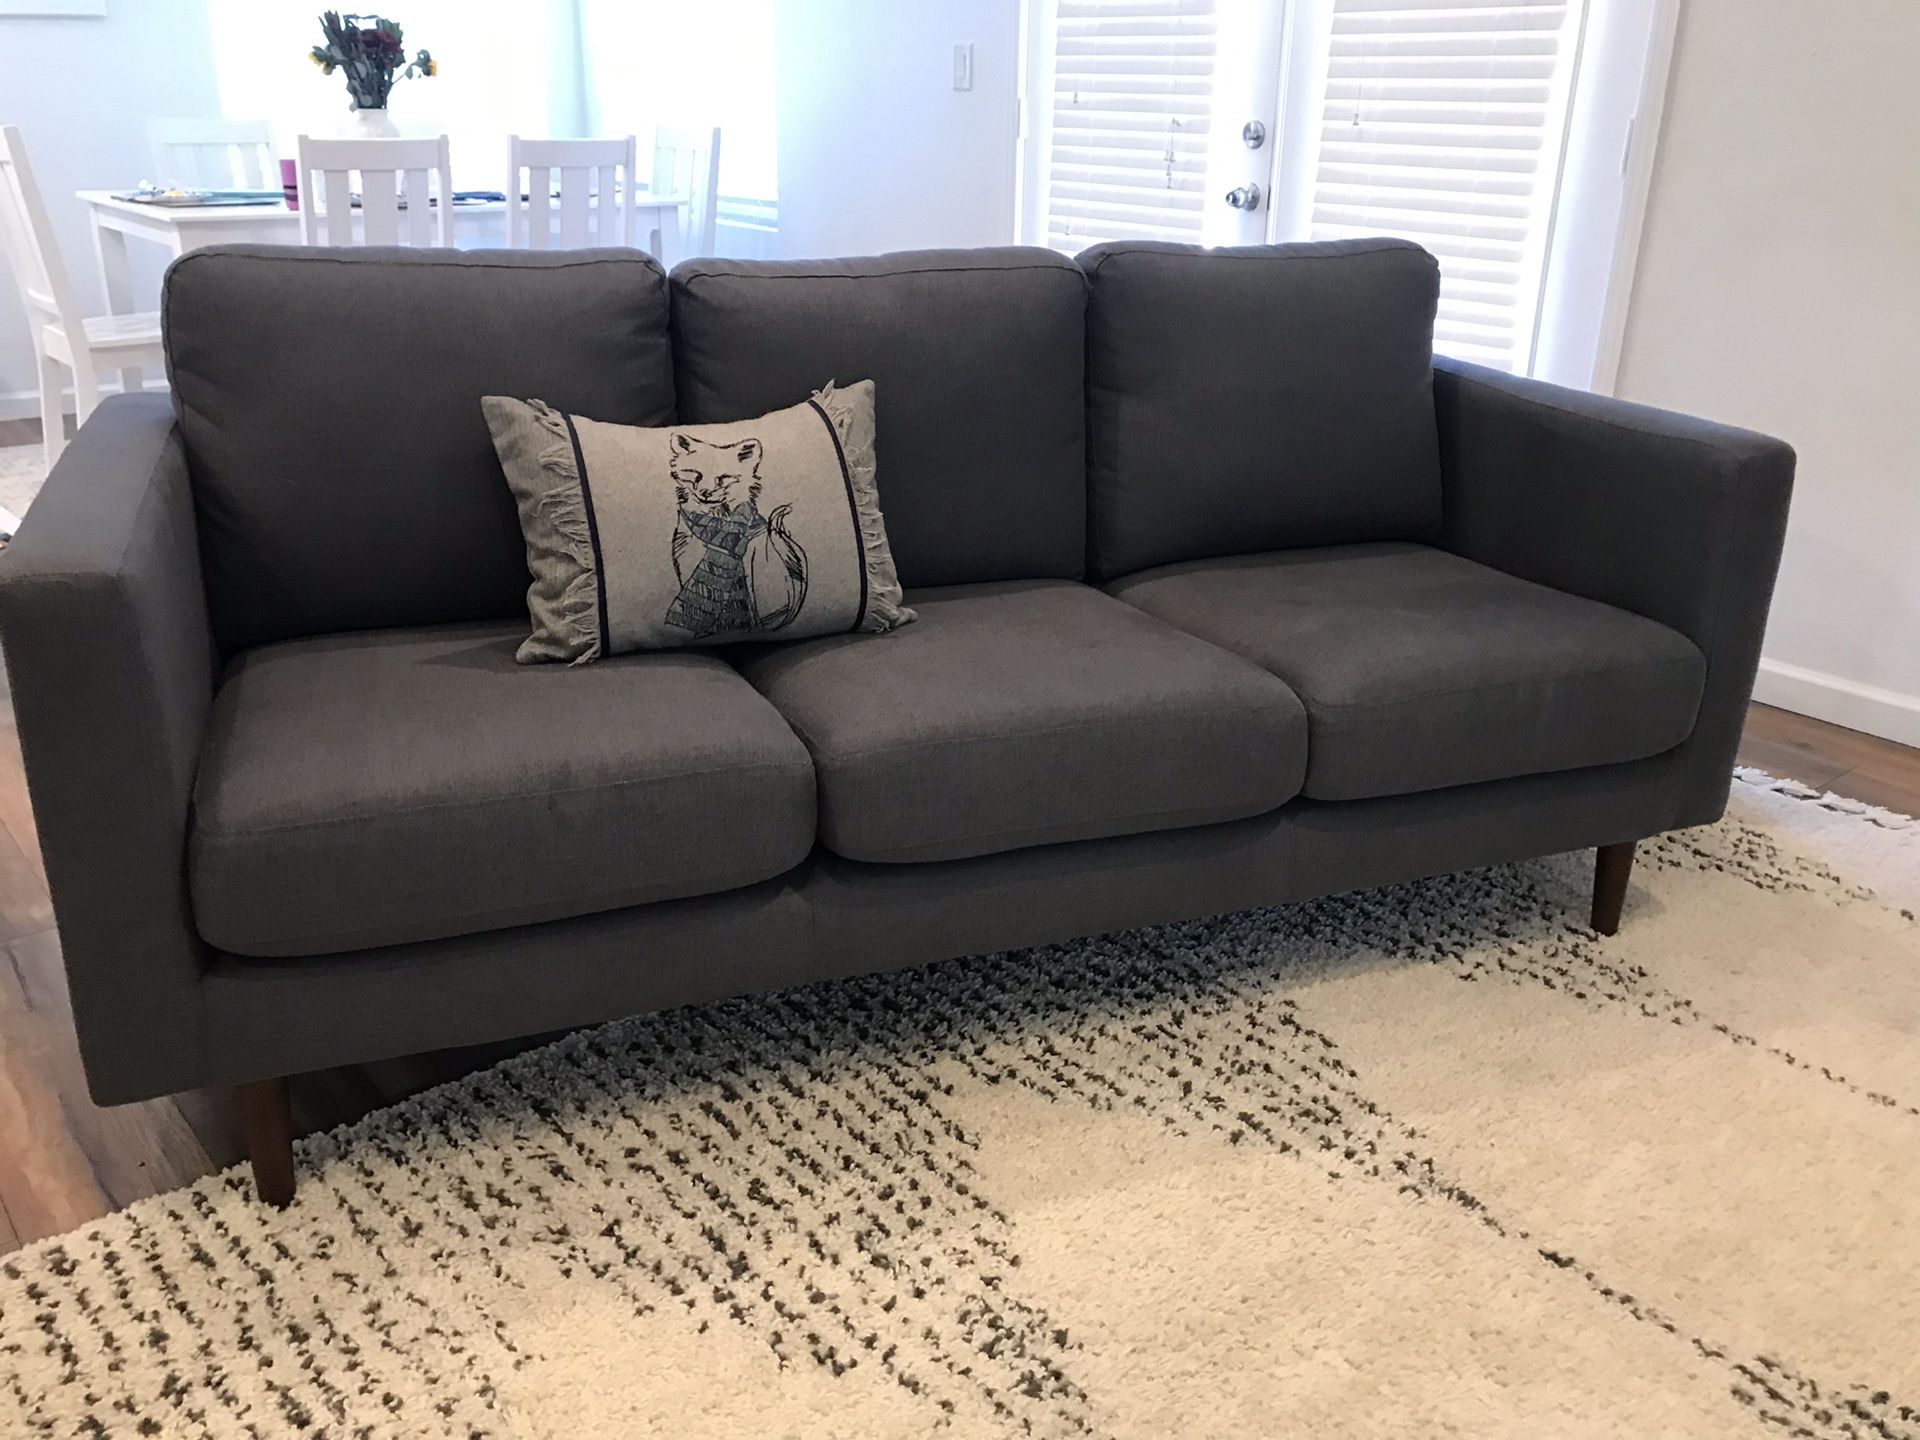 NEW Rivet Revolve Modern Upholstered Sofa